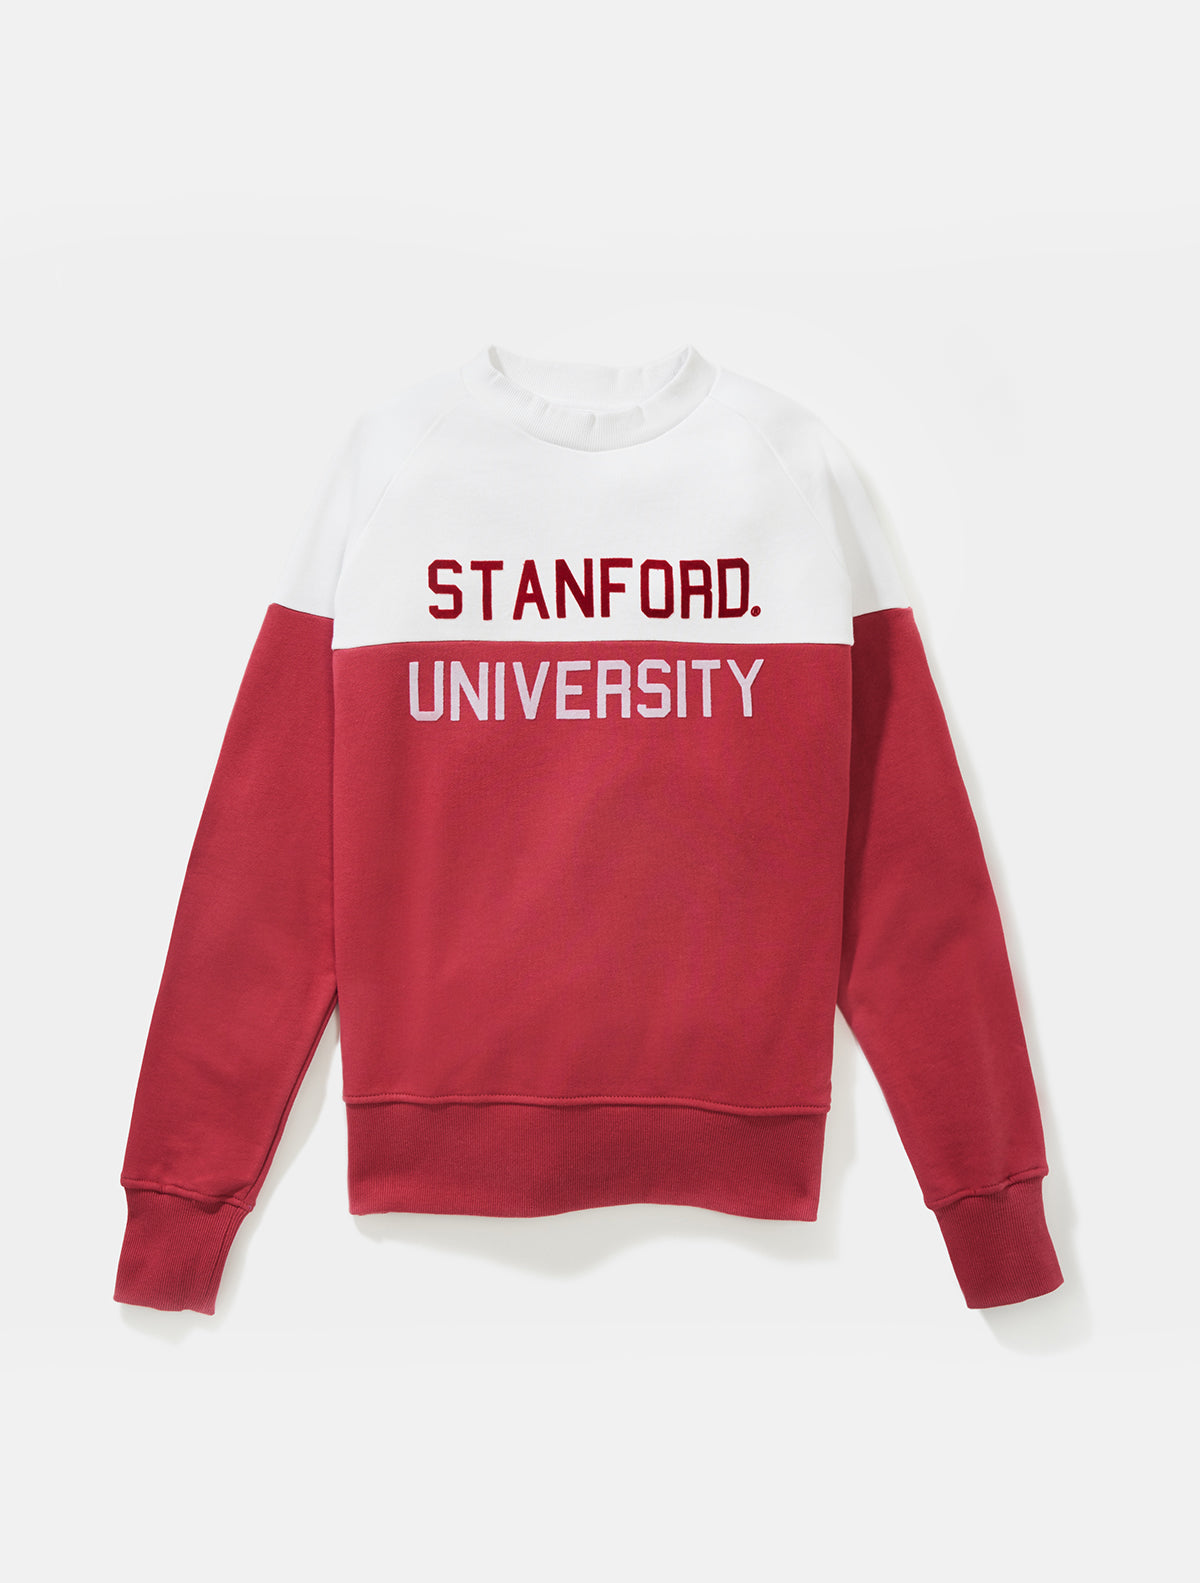 Stanford Colorfield Sweatshirt – Hillflint